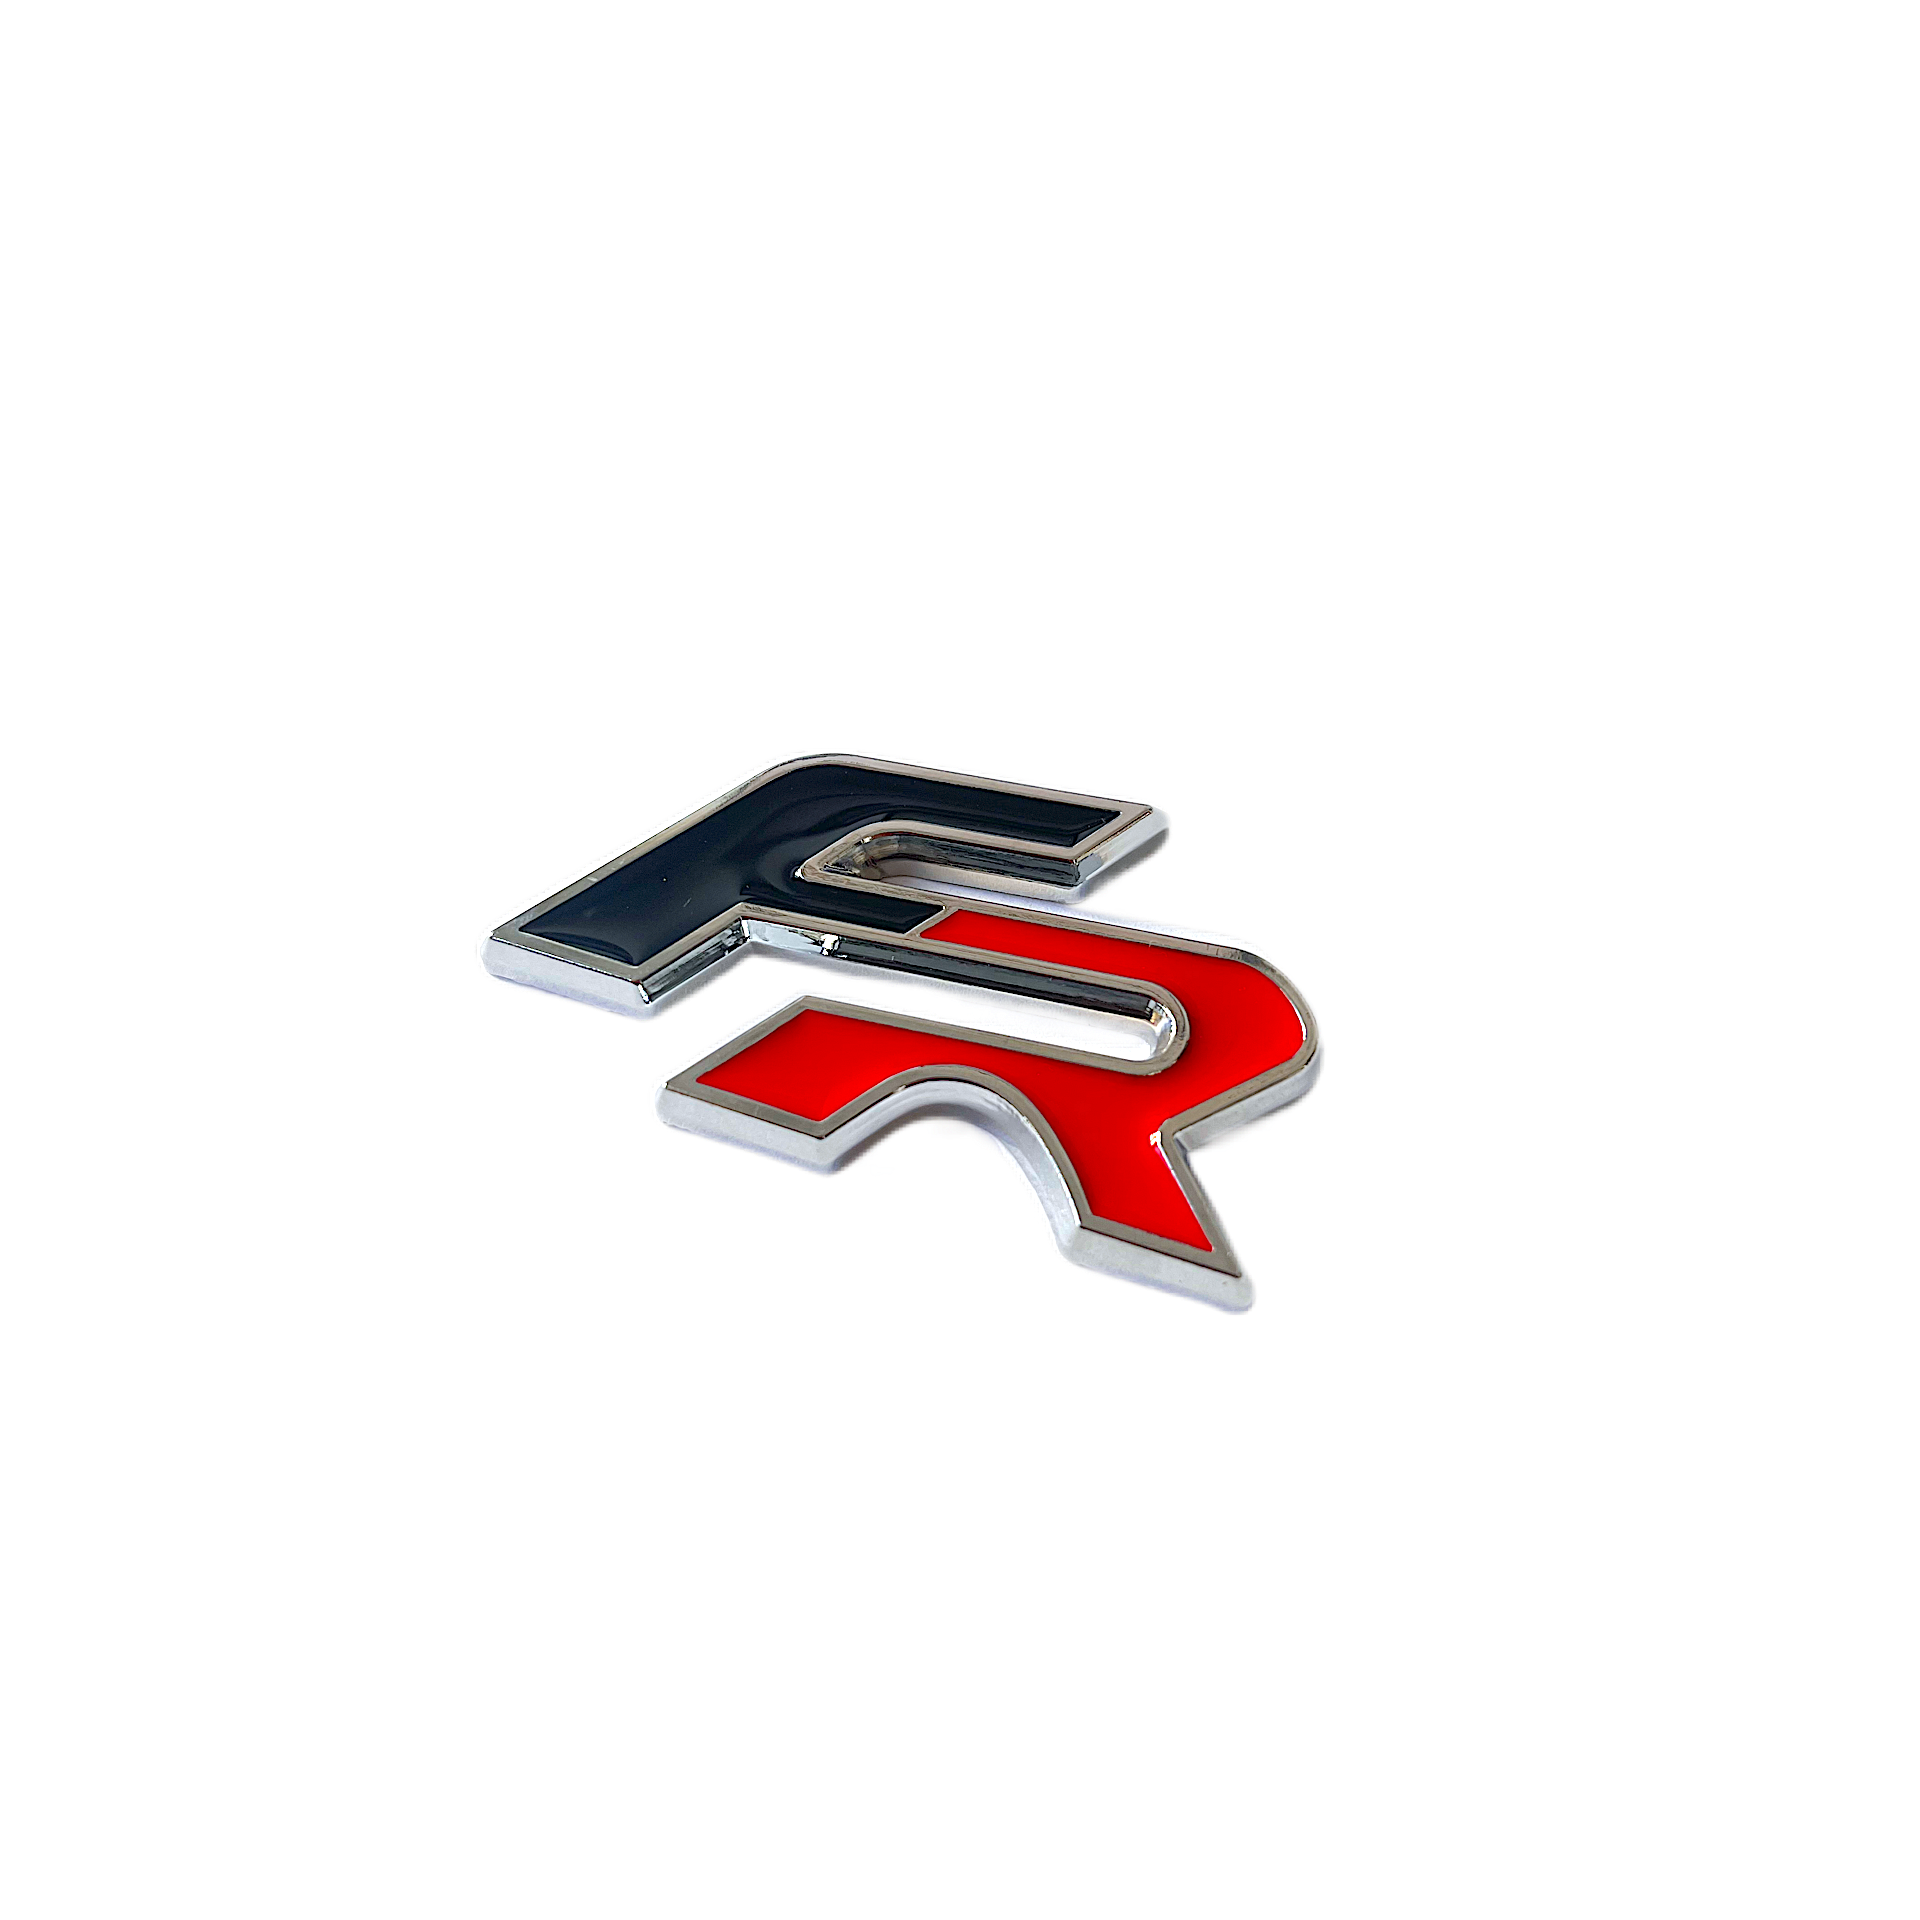 SEAT FR emblem - BilligStyling